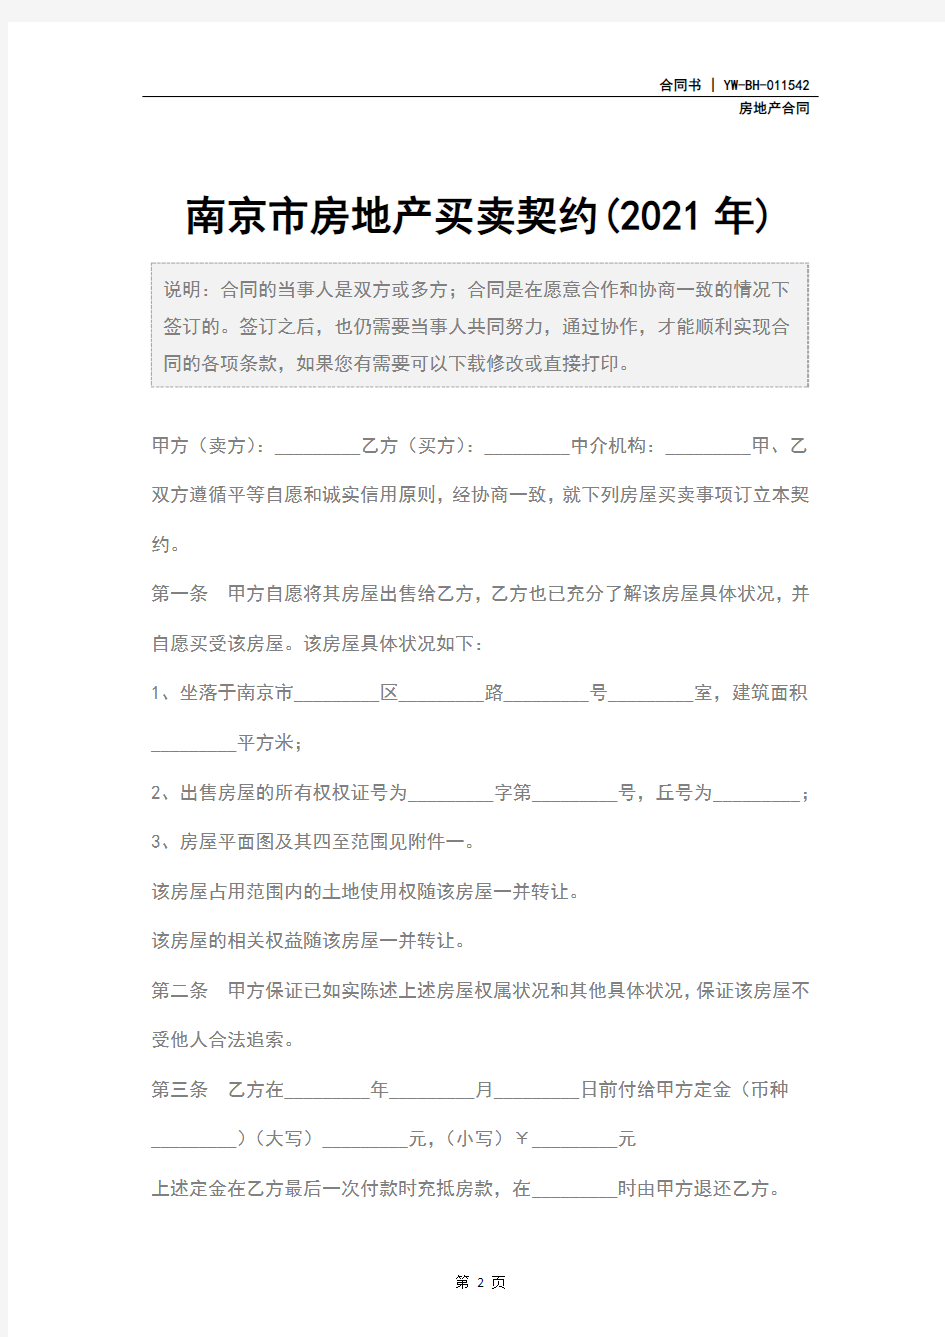 南京市房地产买卖契约(2021年)